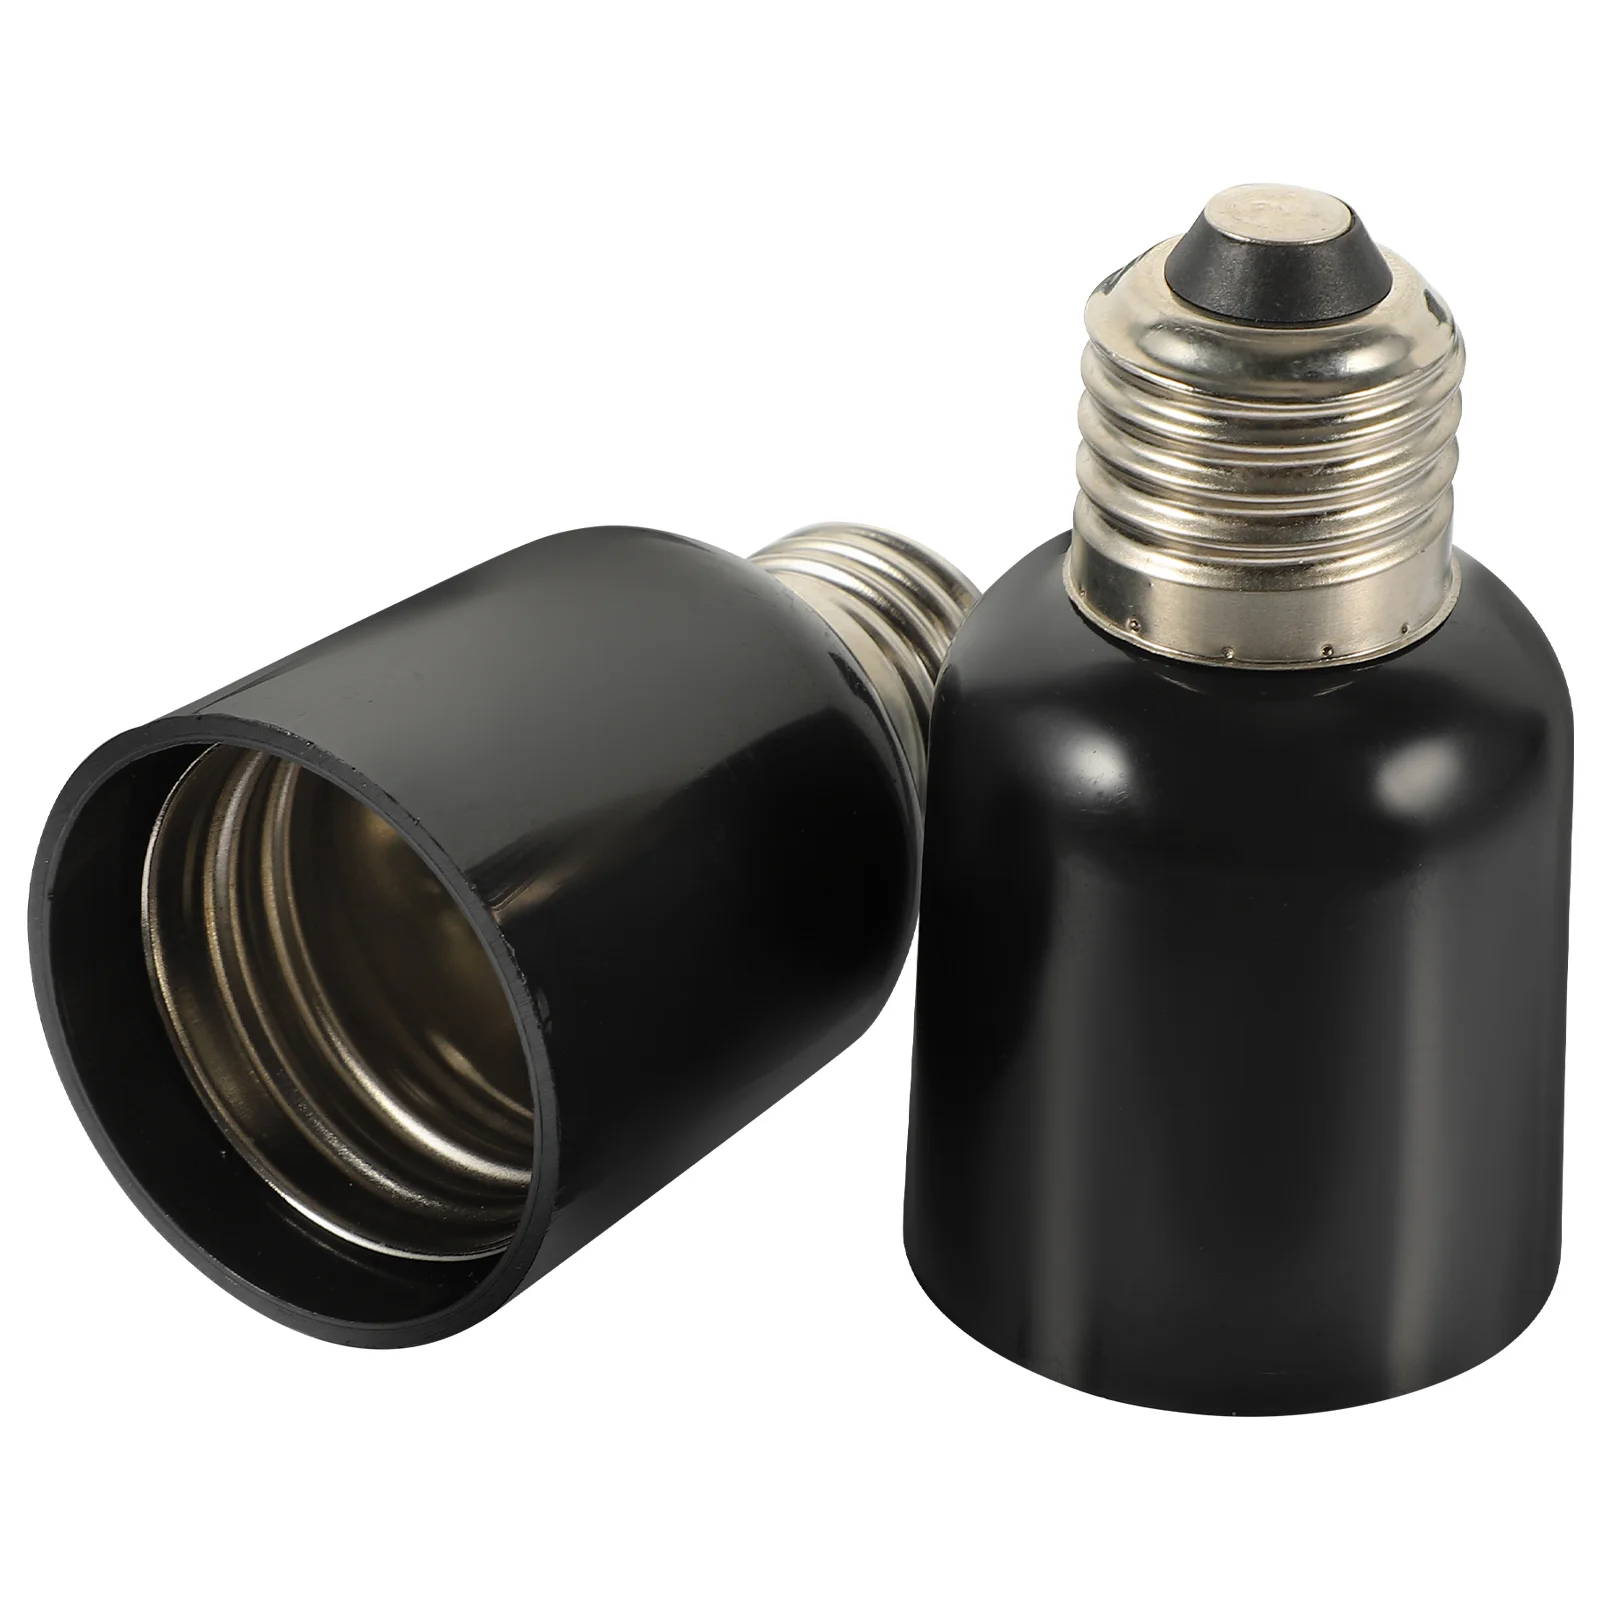 

2 Pcs Household E27 to E40 Conversion Lamp Head Light Adapter Bulb Converter for Lights Converters Bakelite Screw Socket